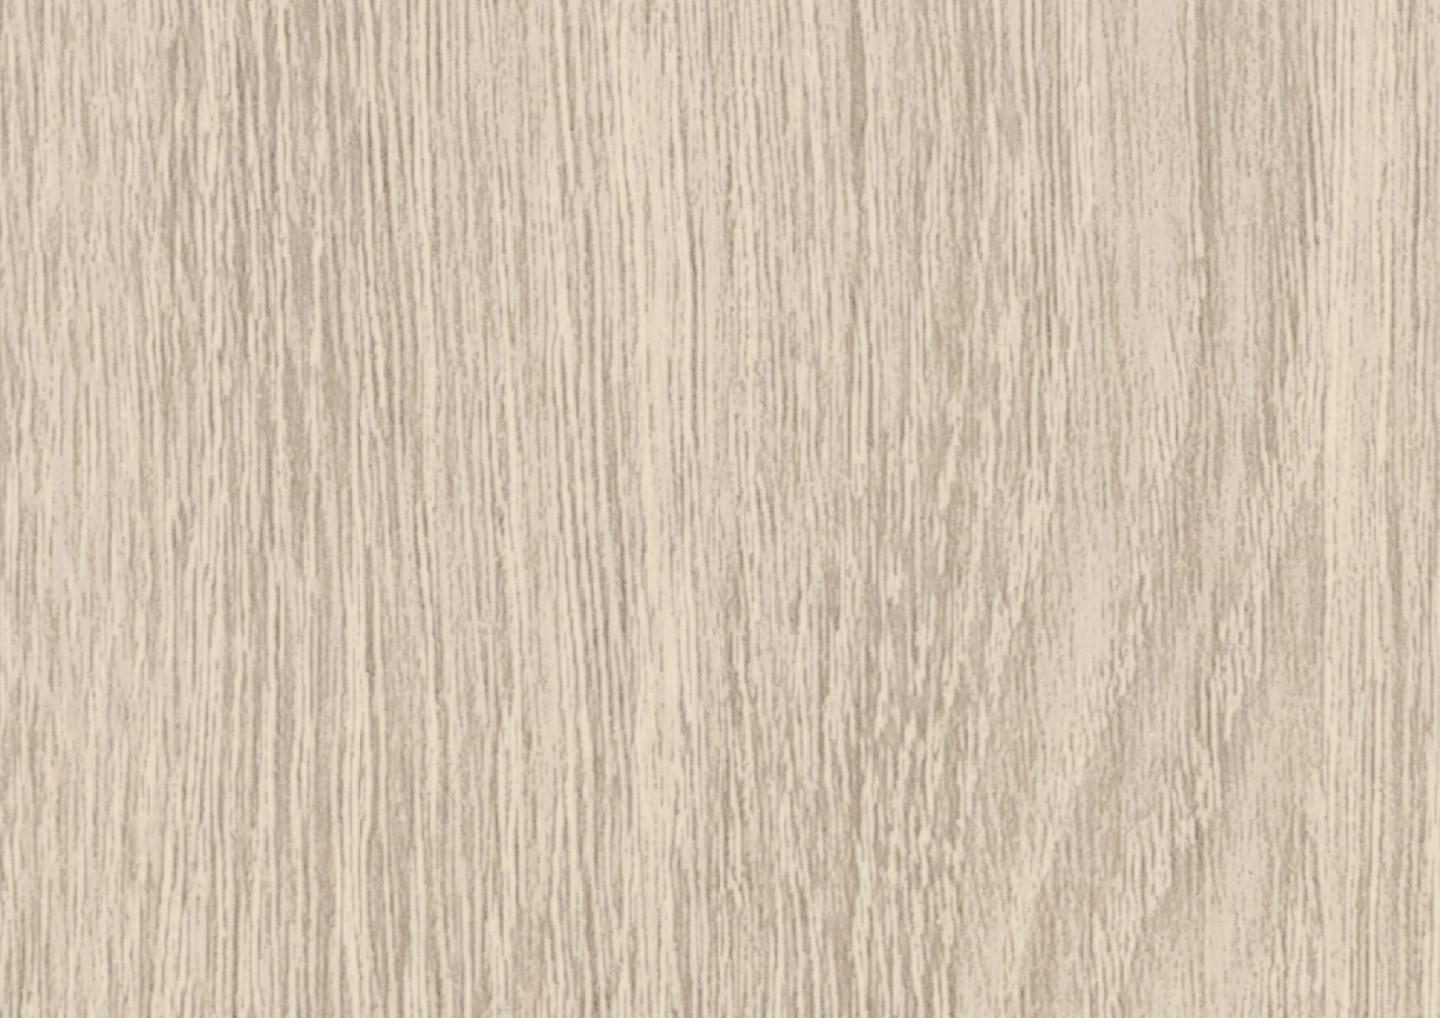 Composito-PVC - White Oak Color Options